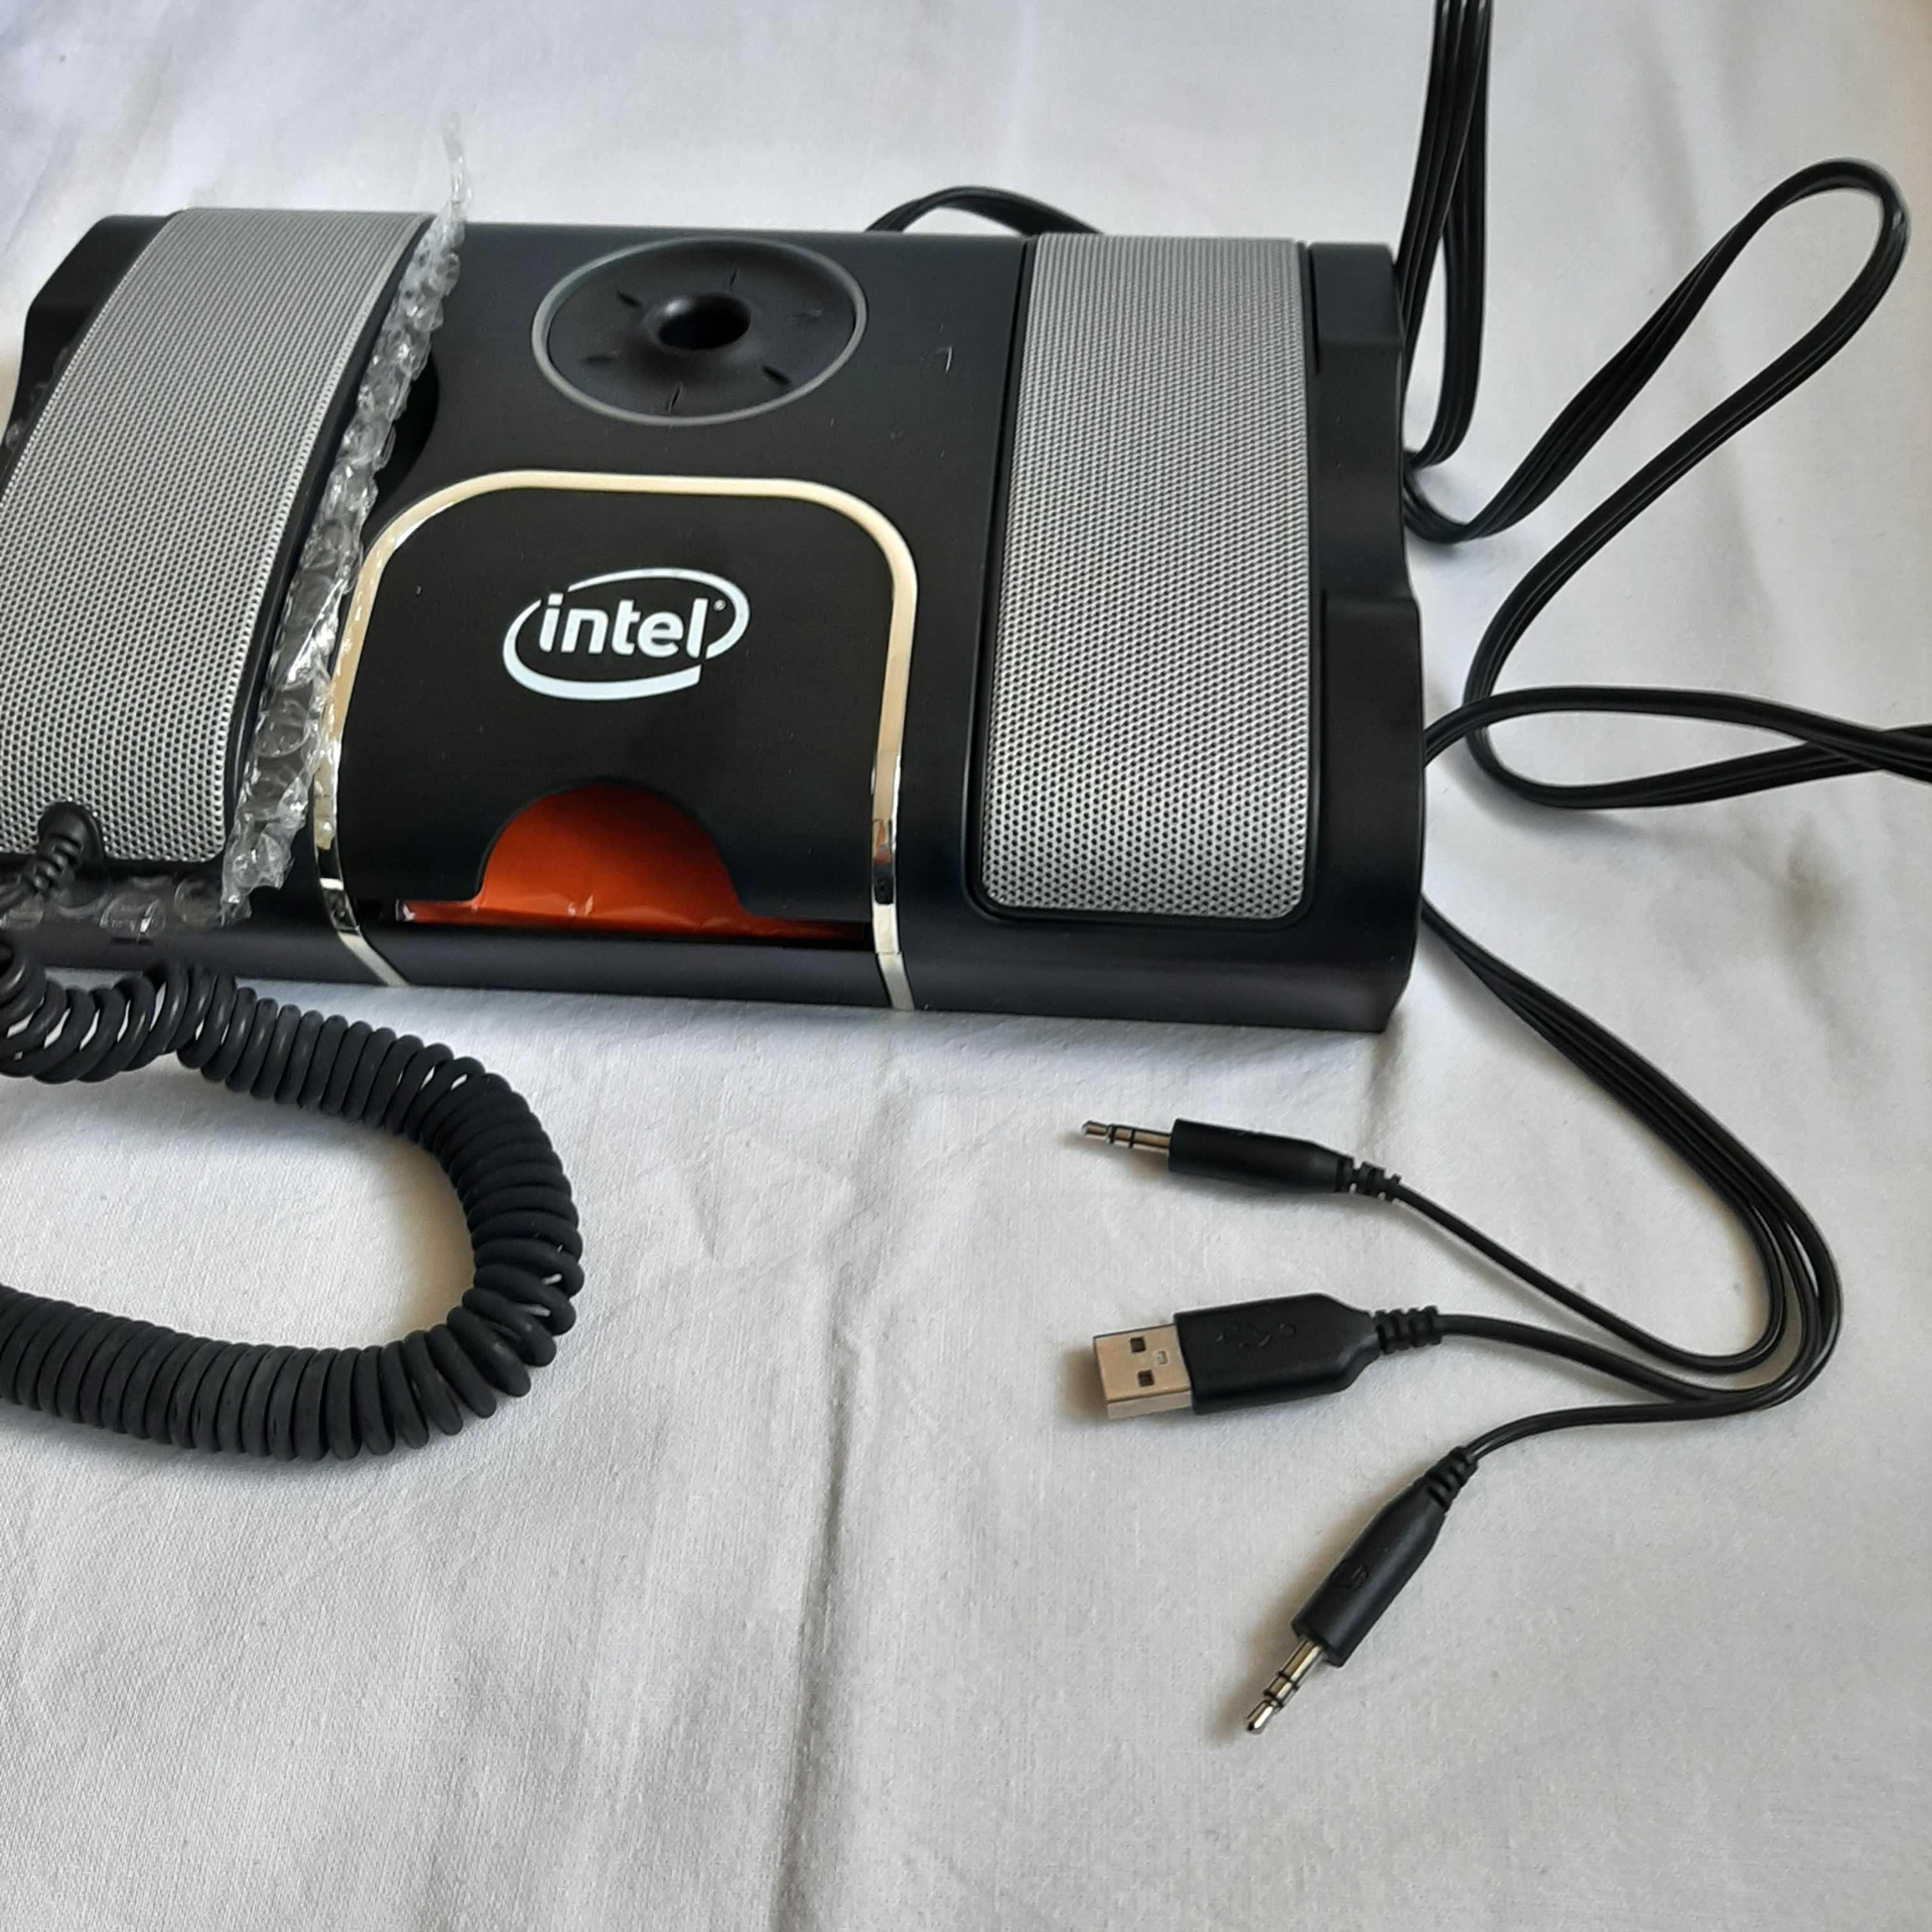 Odbiornik VoIP Notone i głośnik głośnomówiący Telefon VoIP firmy Intel